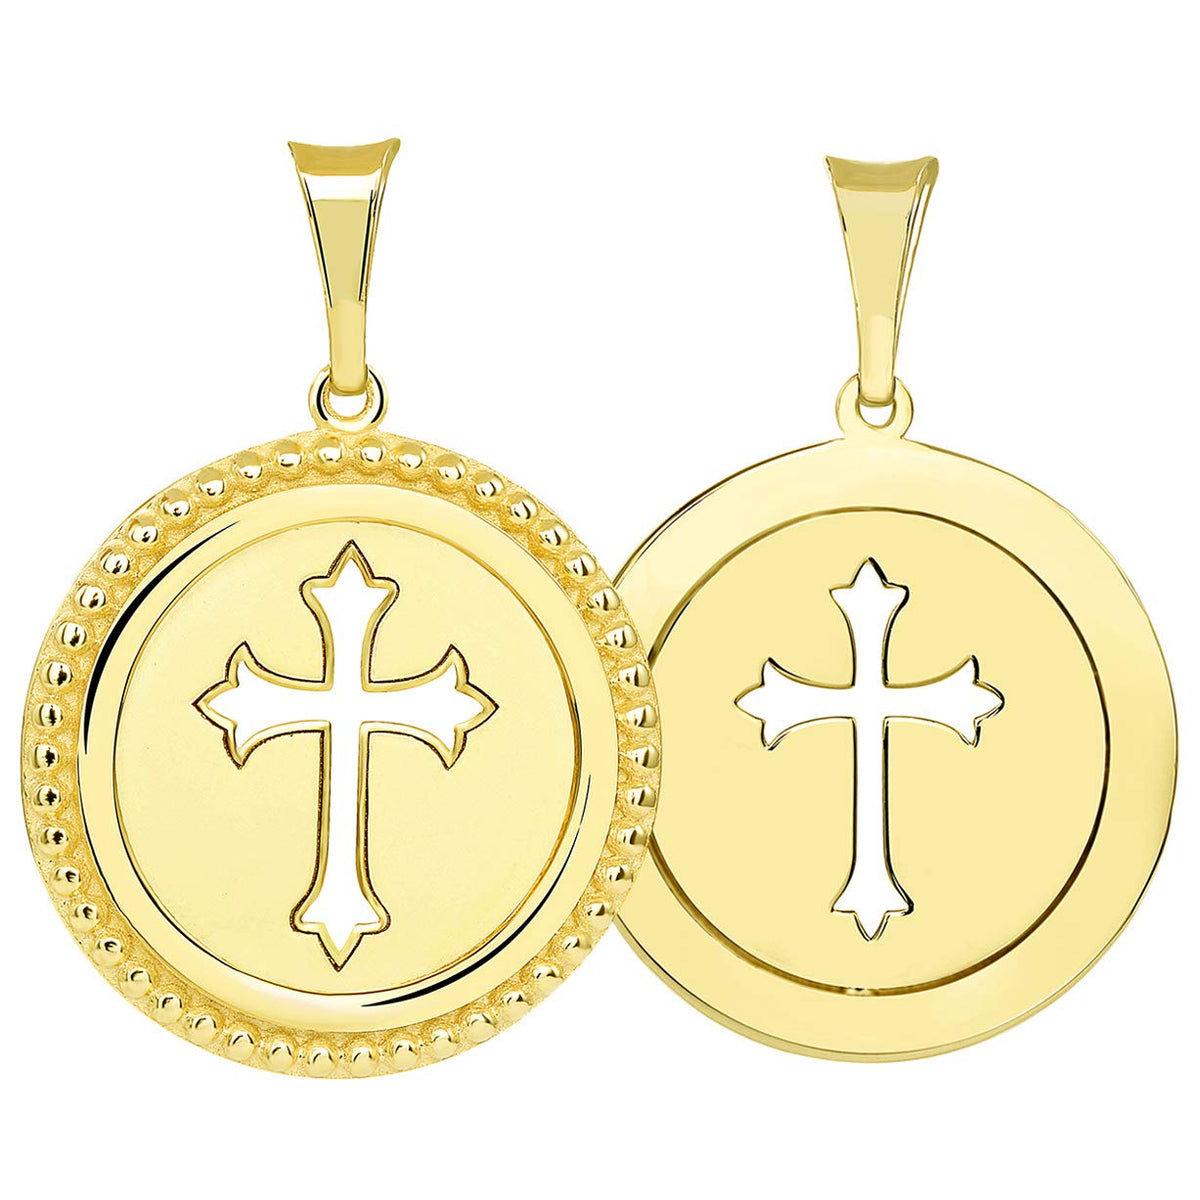 Reversible Open Christian Cross Medallion Pendant